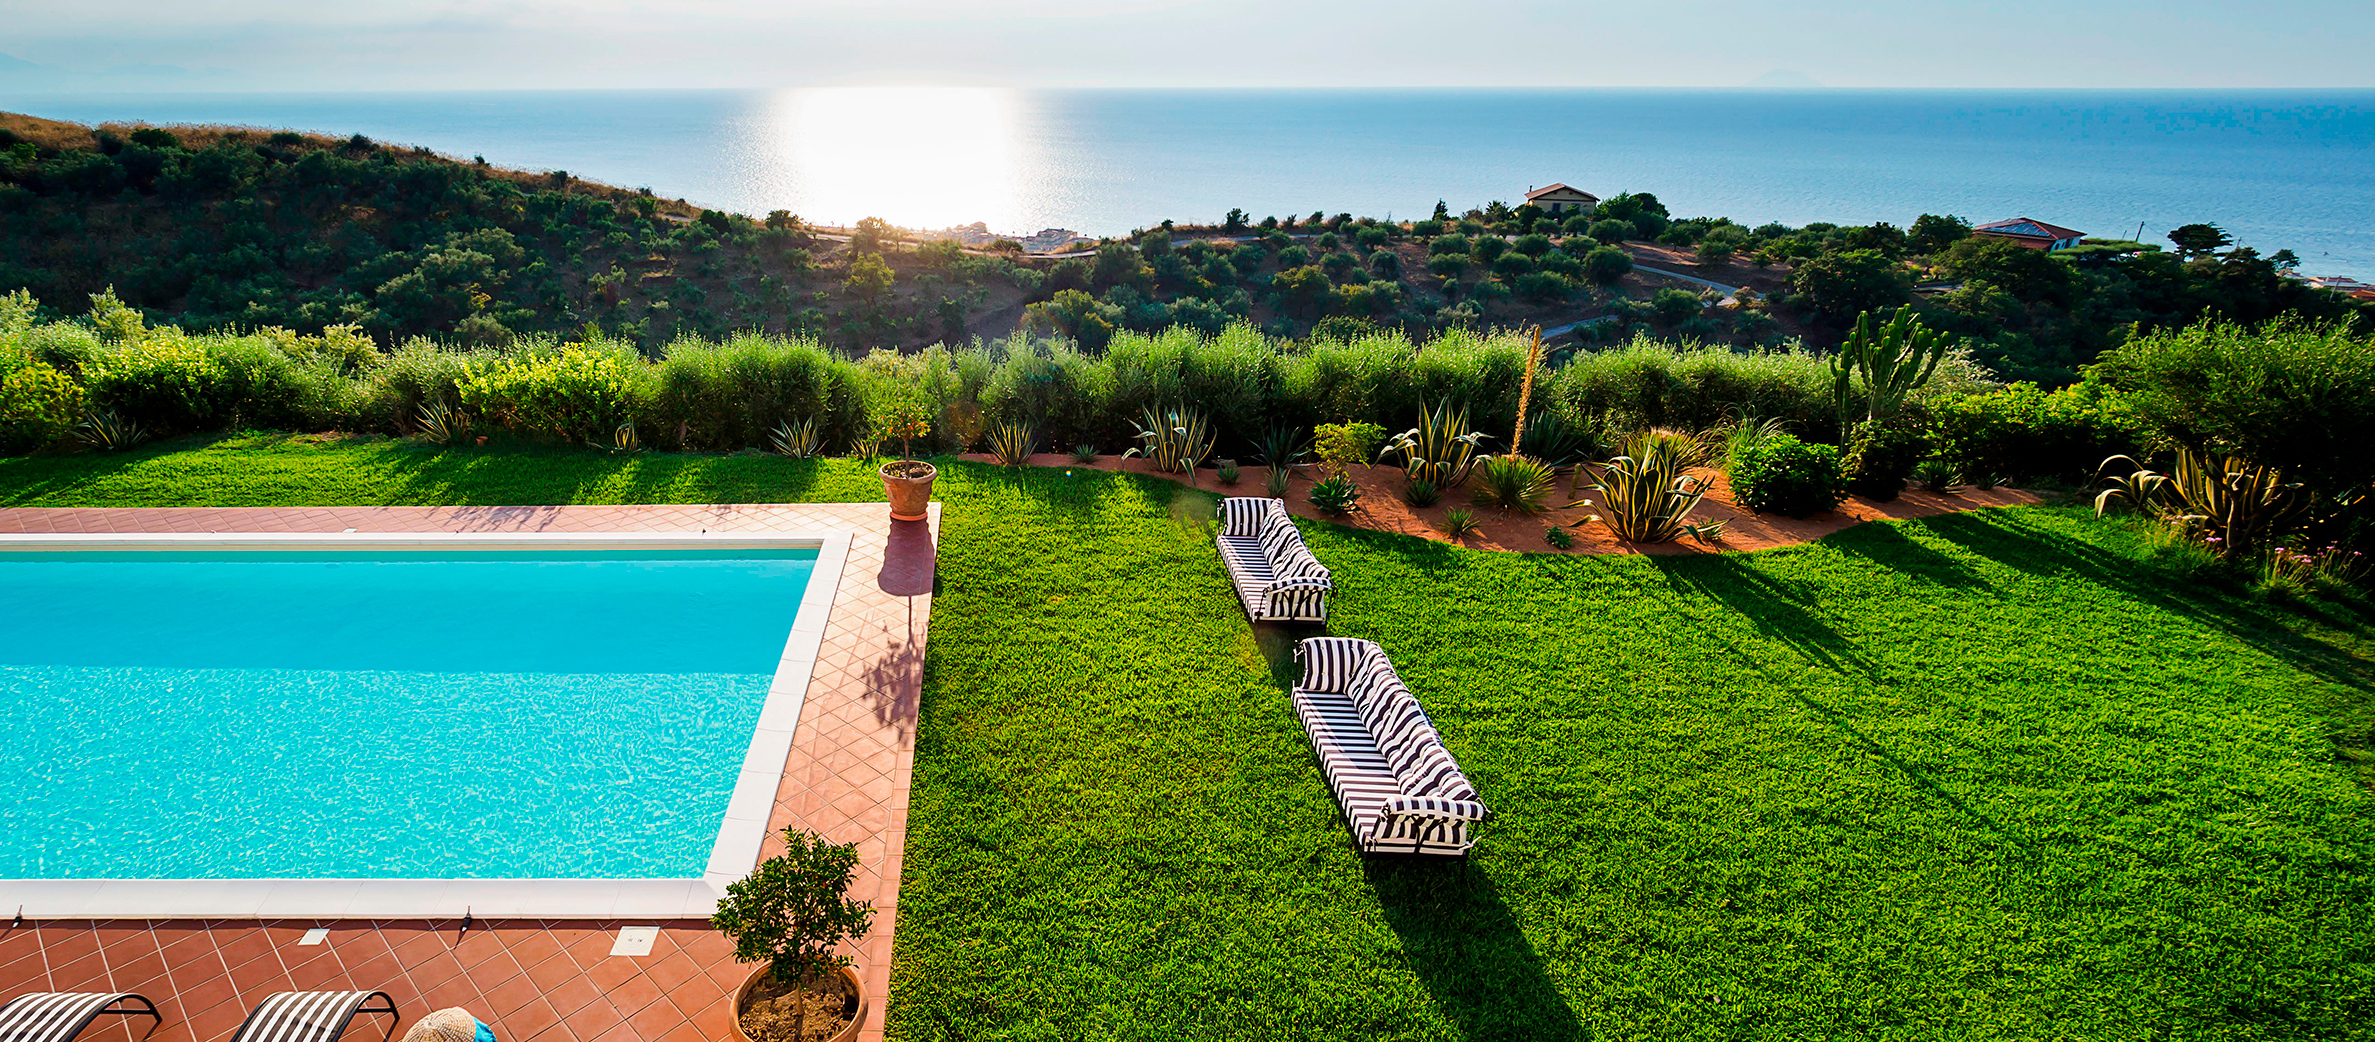 Estella, Capo D'Orlando, Sicily - Villa with pool for rent - 1